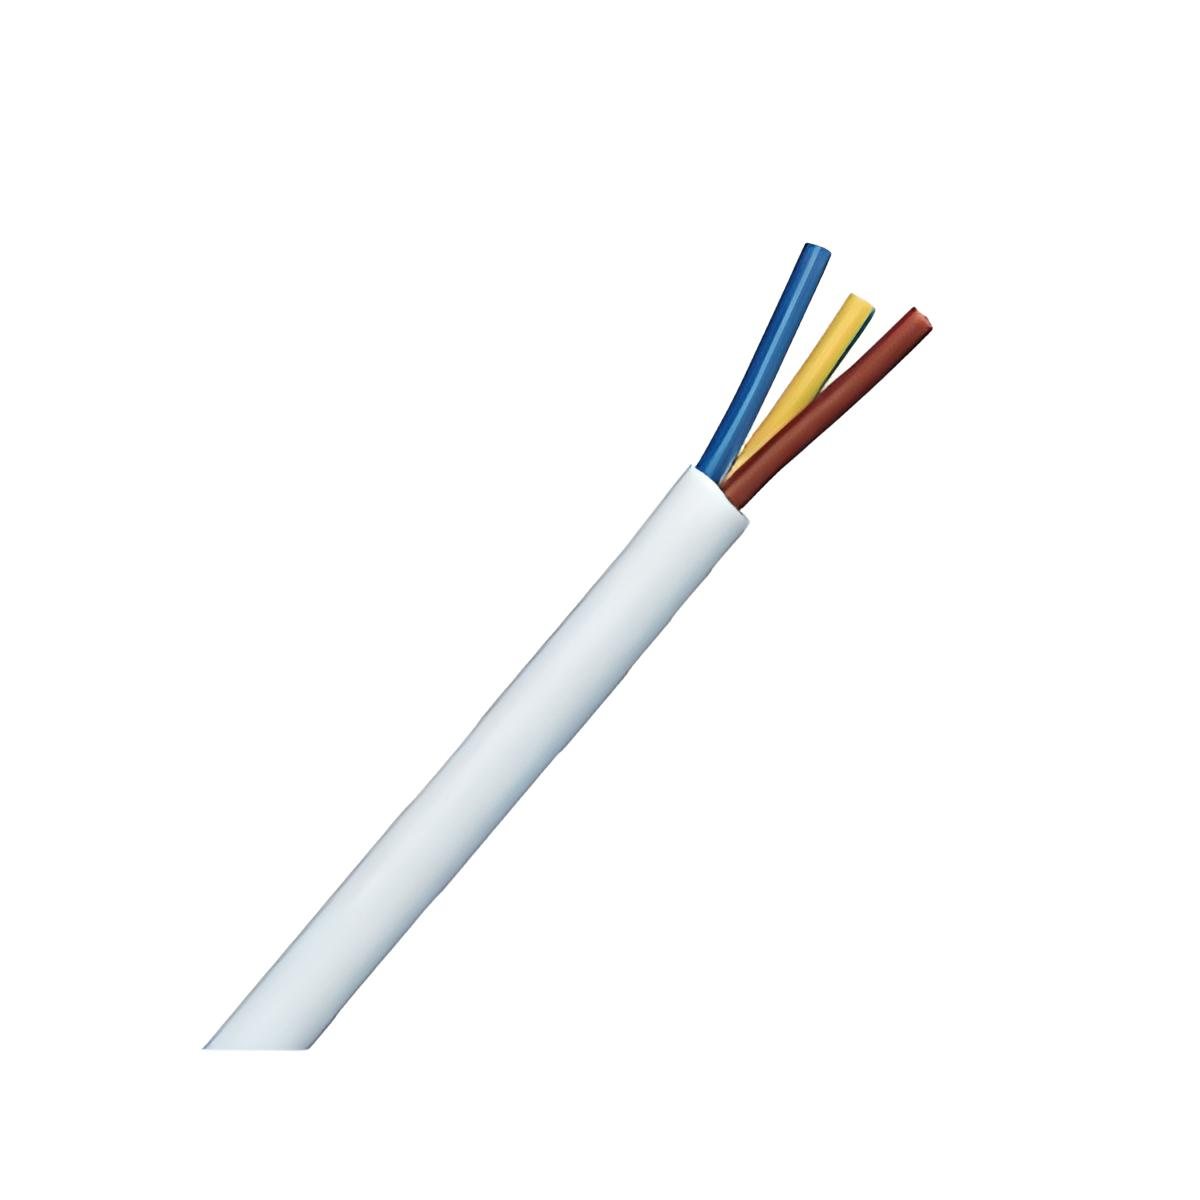 Câble métallique en Acier inoxydable, 1,5 mm x 100m, 26kg